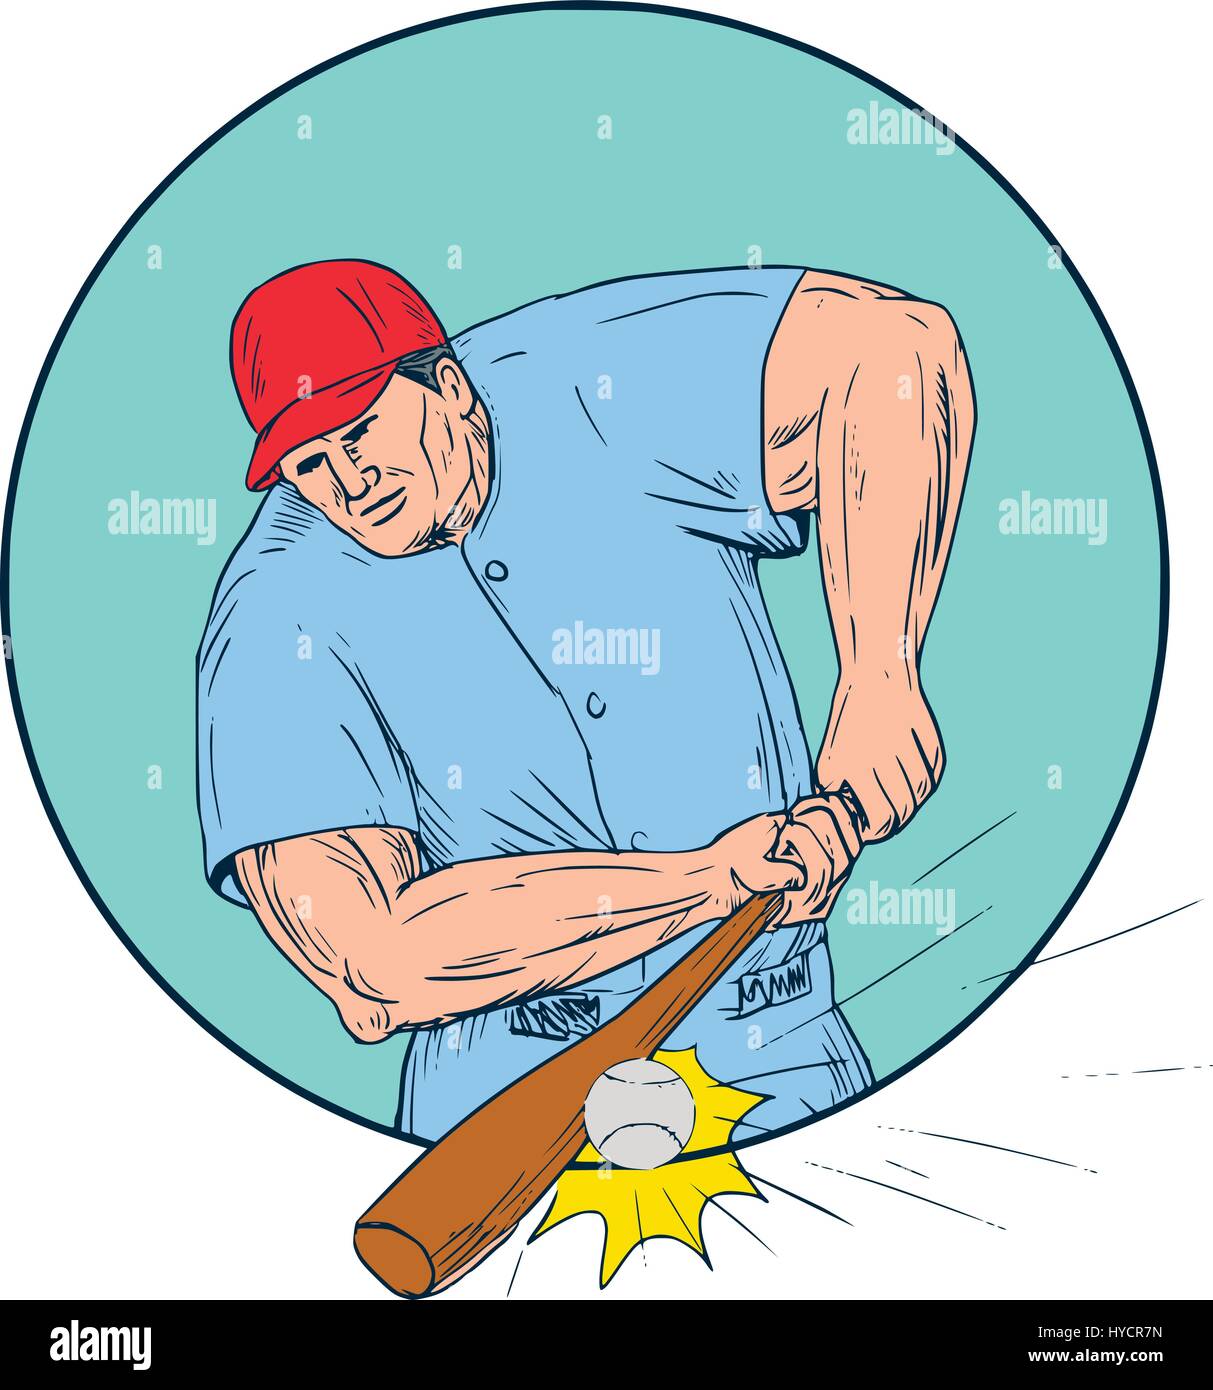 Disegno stile sketch illustrazione di un american giocatore di baseball della pastella hitter di colpire un homerun visto dal lato anteriore impostato all'interno del cerchio. Illustrazione Vettoriale